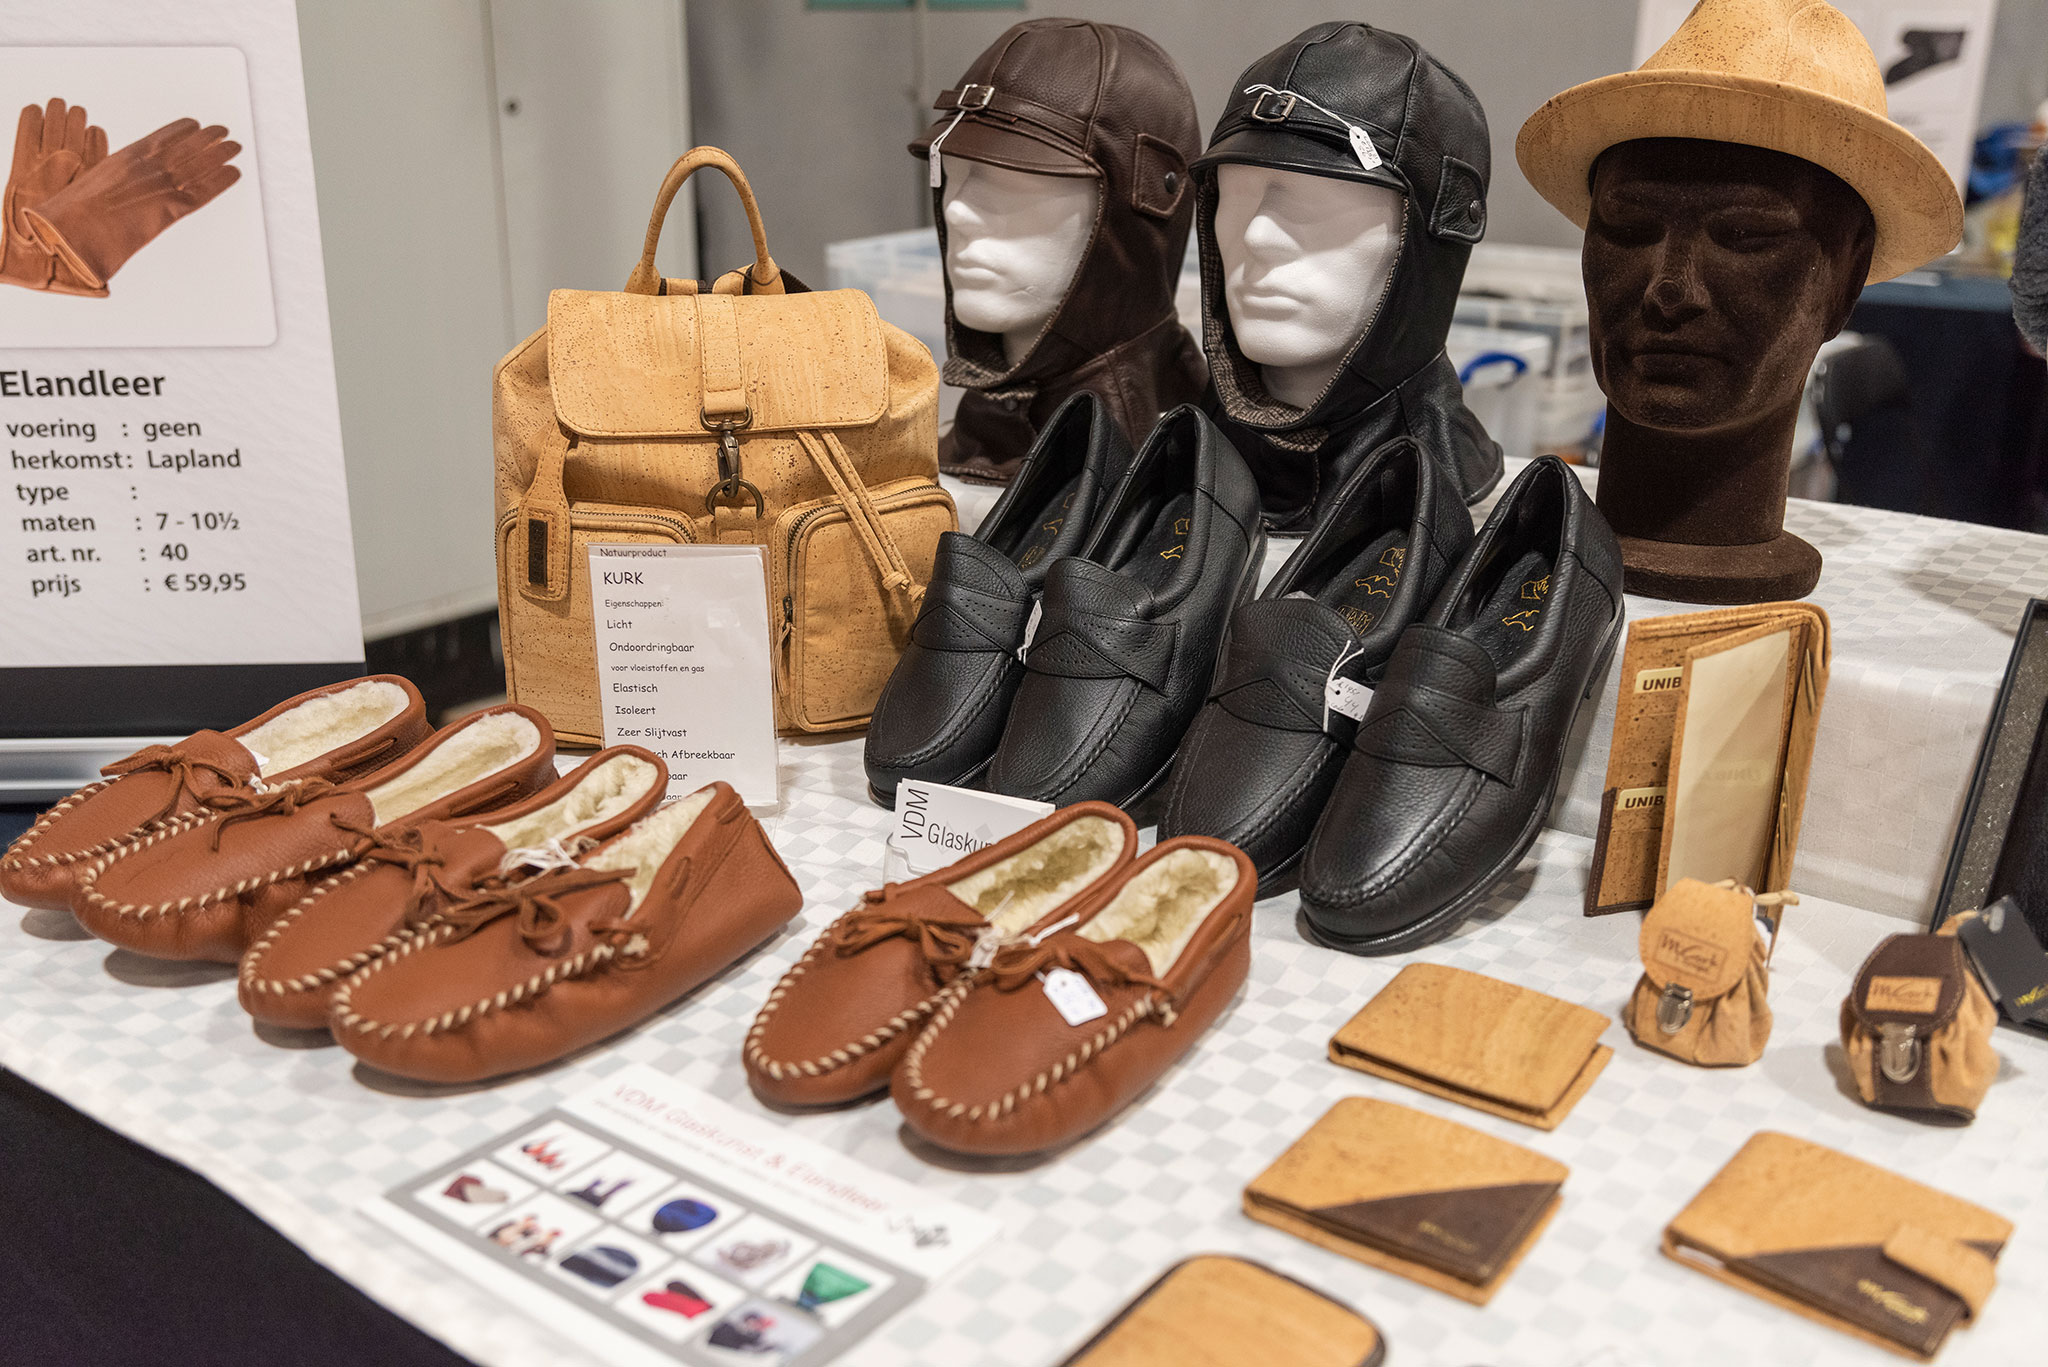 Chaussons fourrés et chaussures en cuir d'élan chez Elandleer à InterClassics 2022.